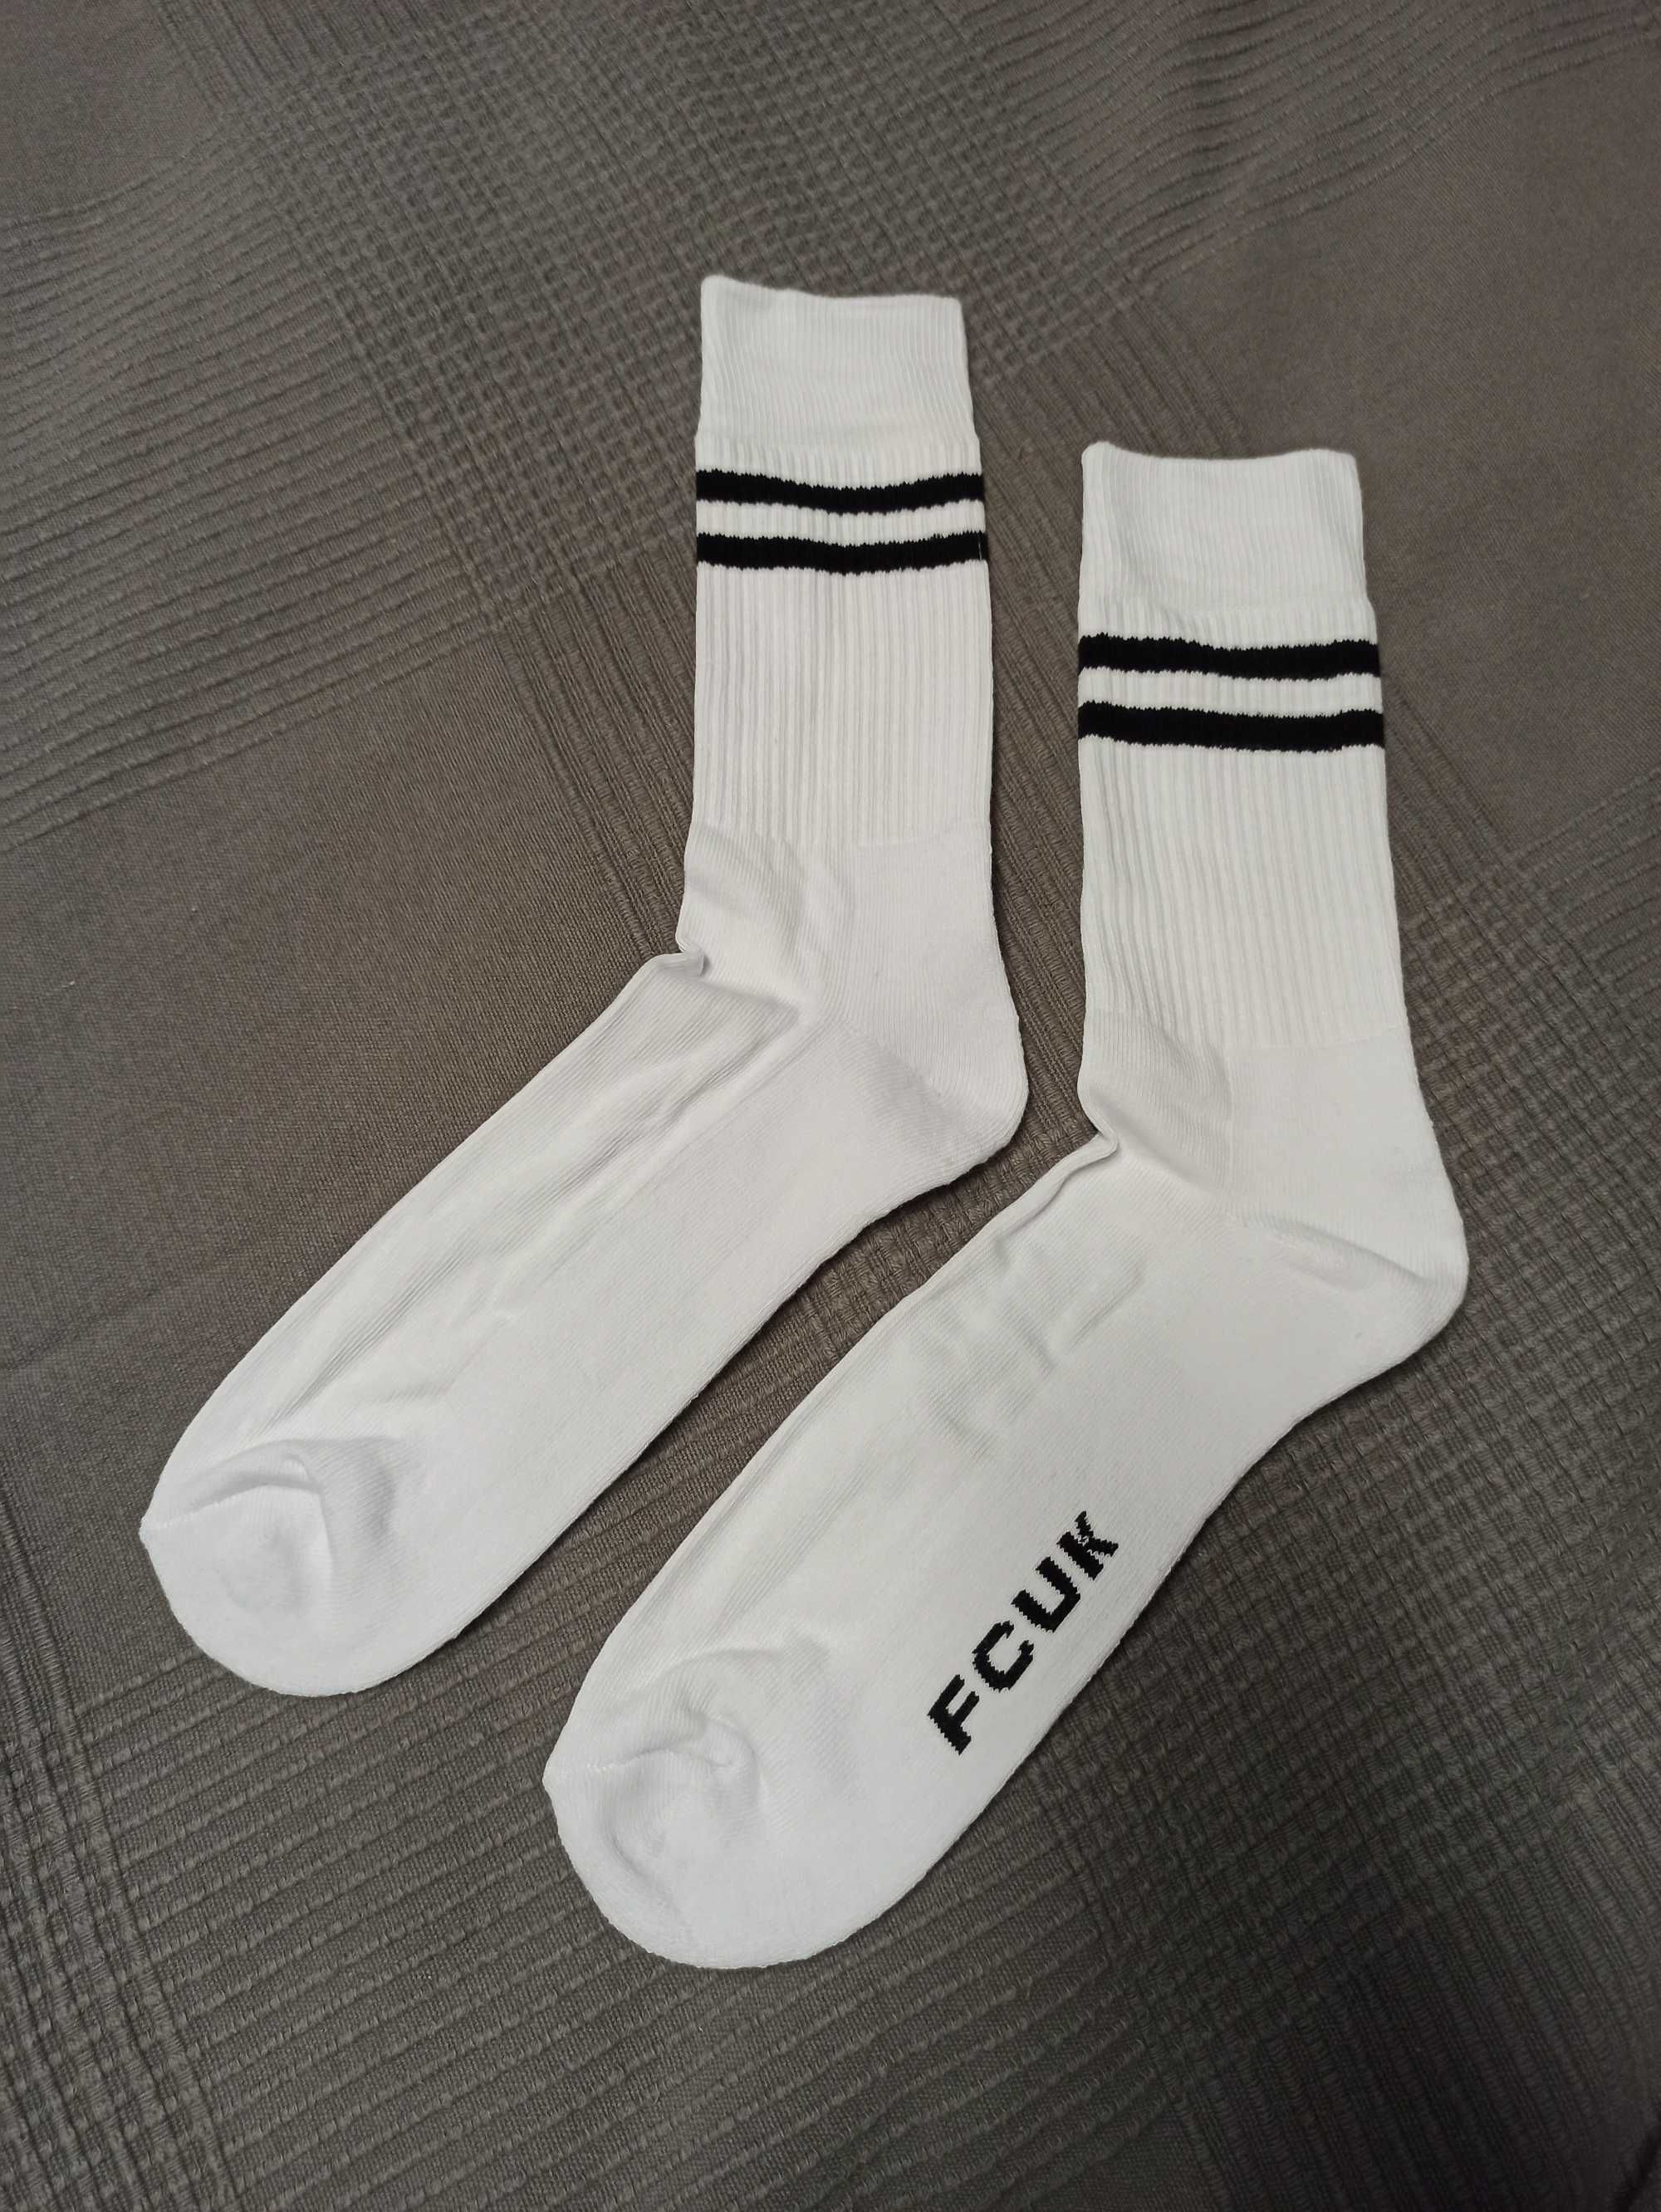 Białe skarpety FCUK rozmiar 40-46 one size white socks soxy sport fun